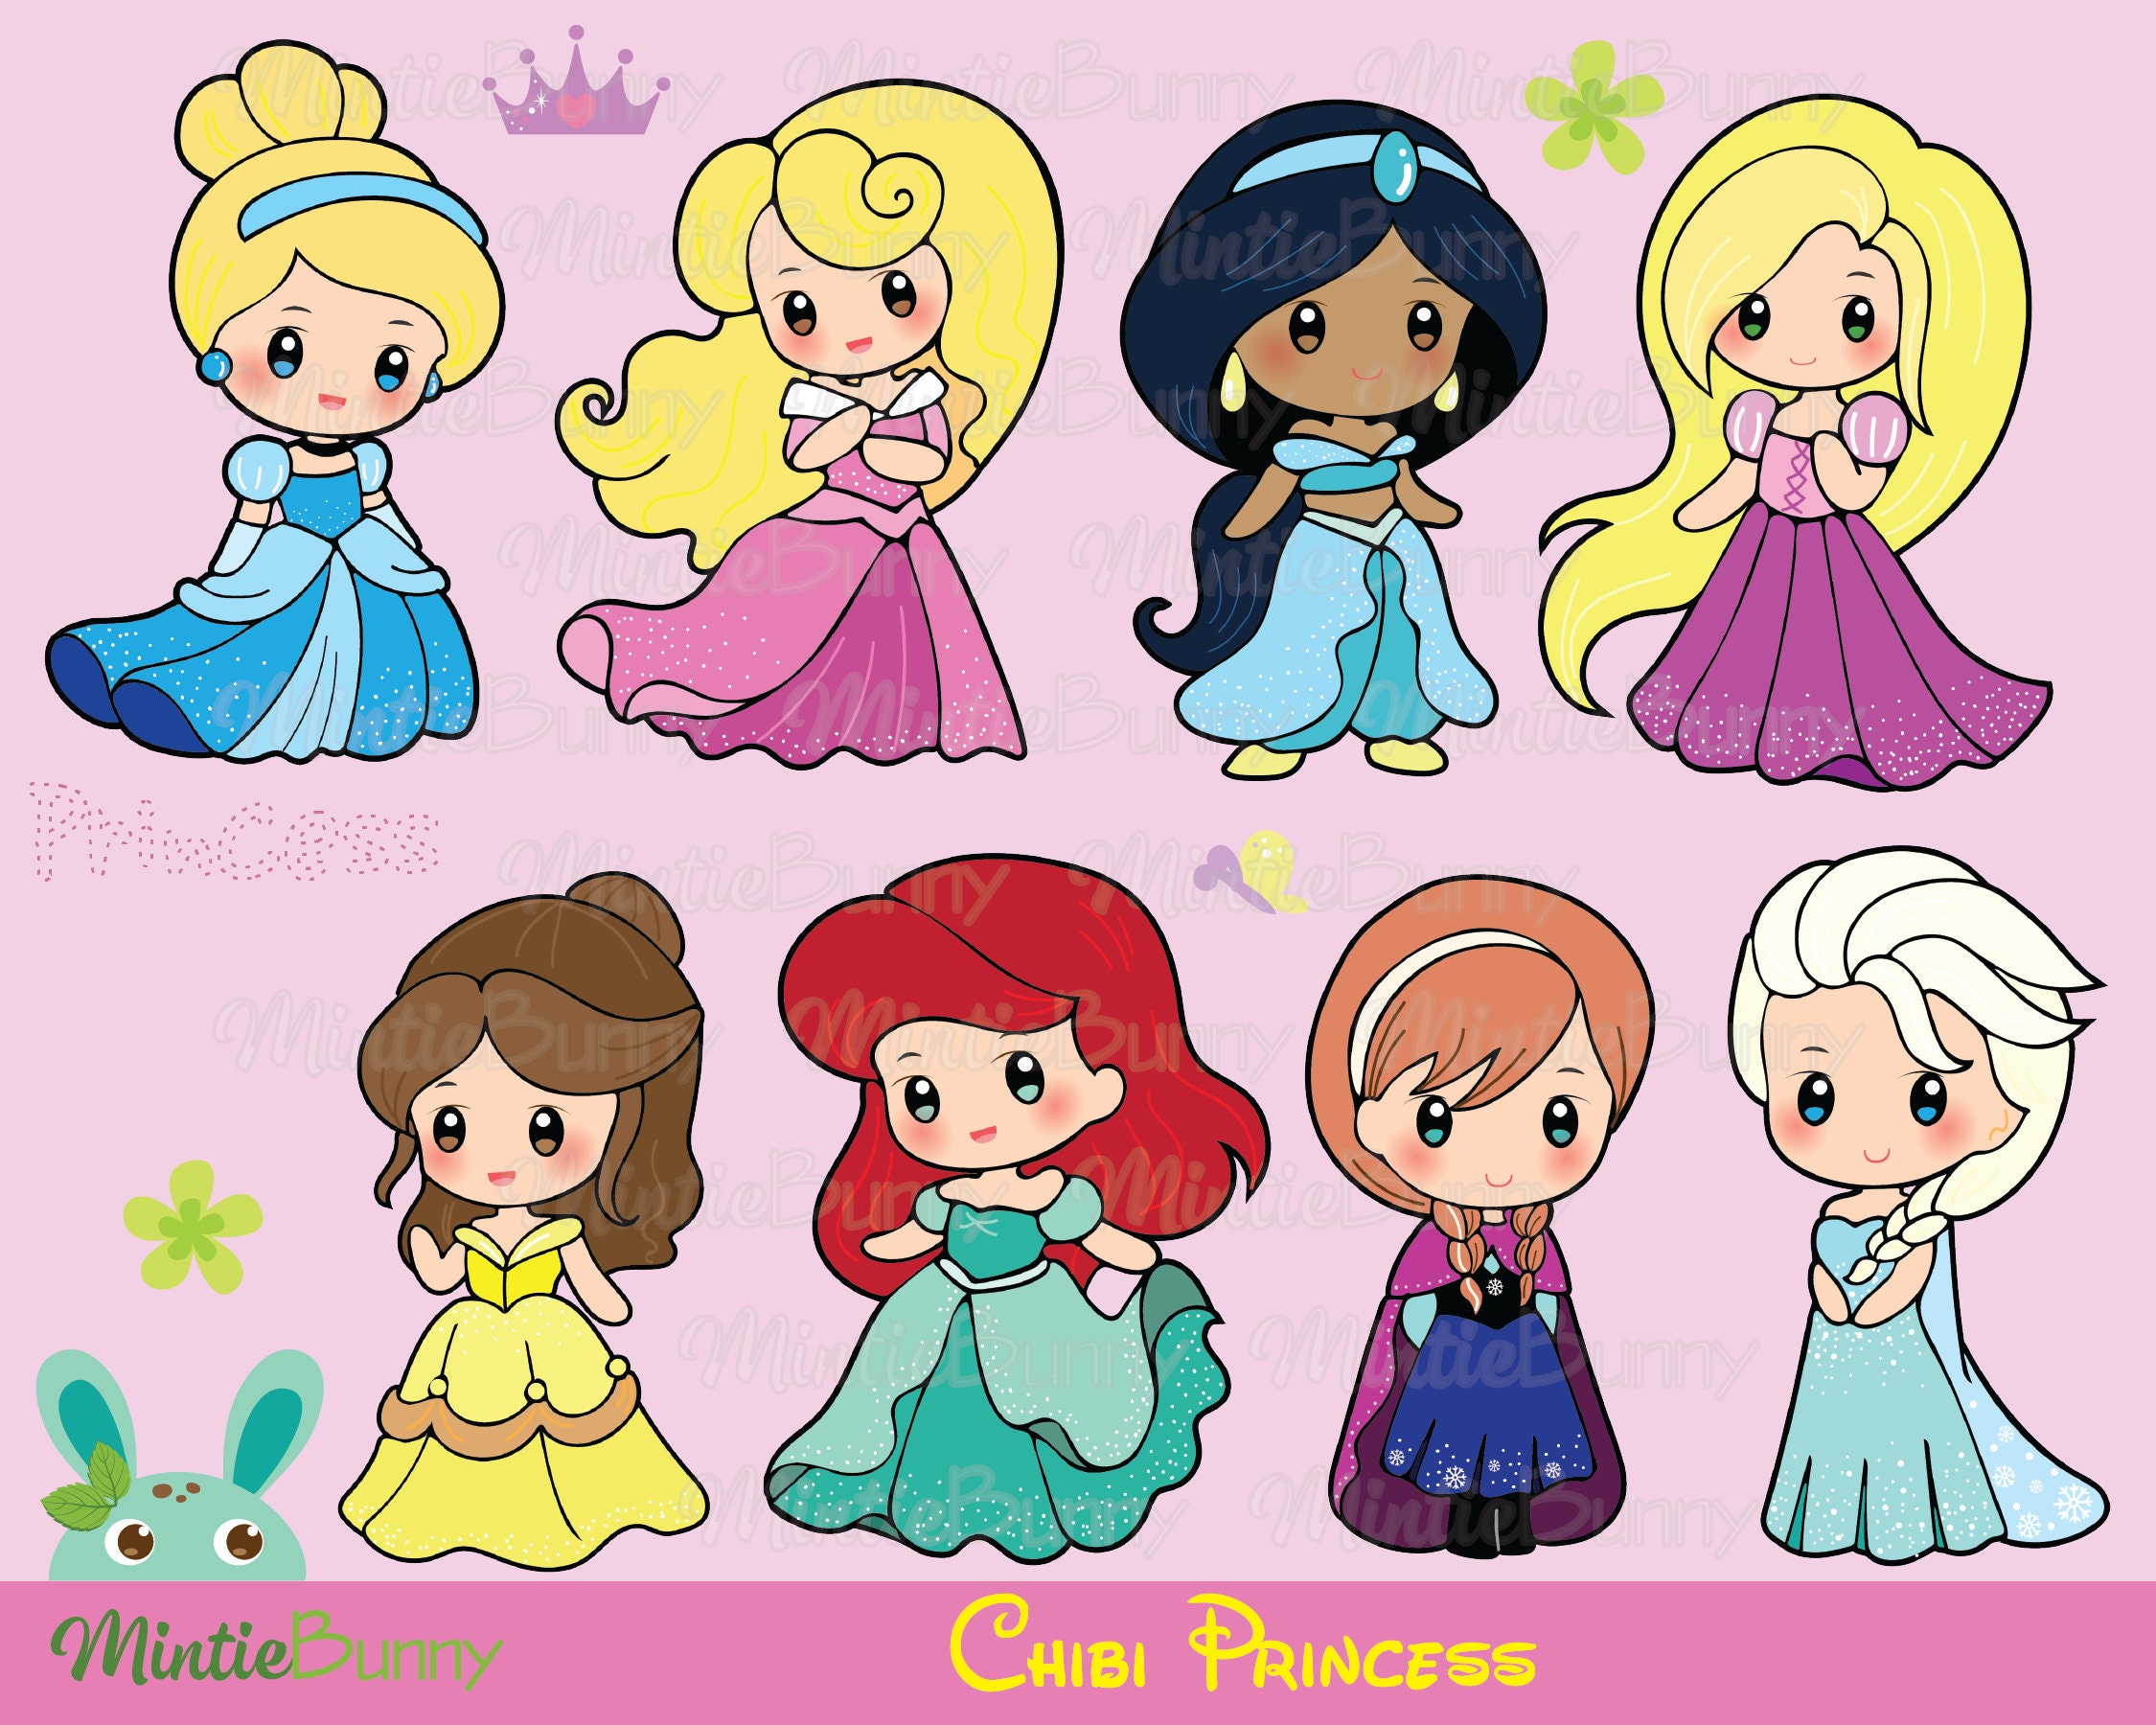 Chibi disney princesses